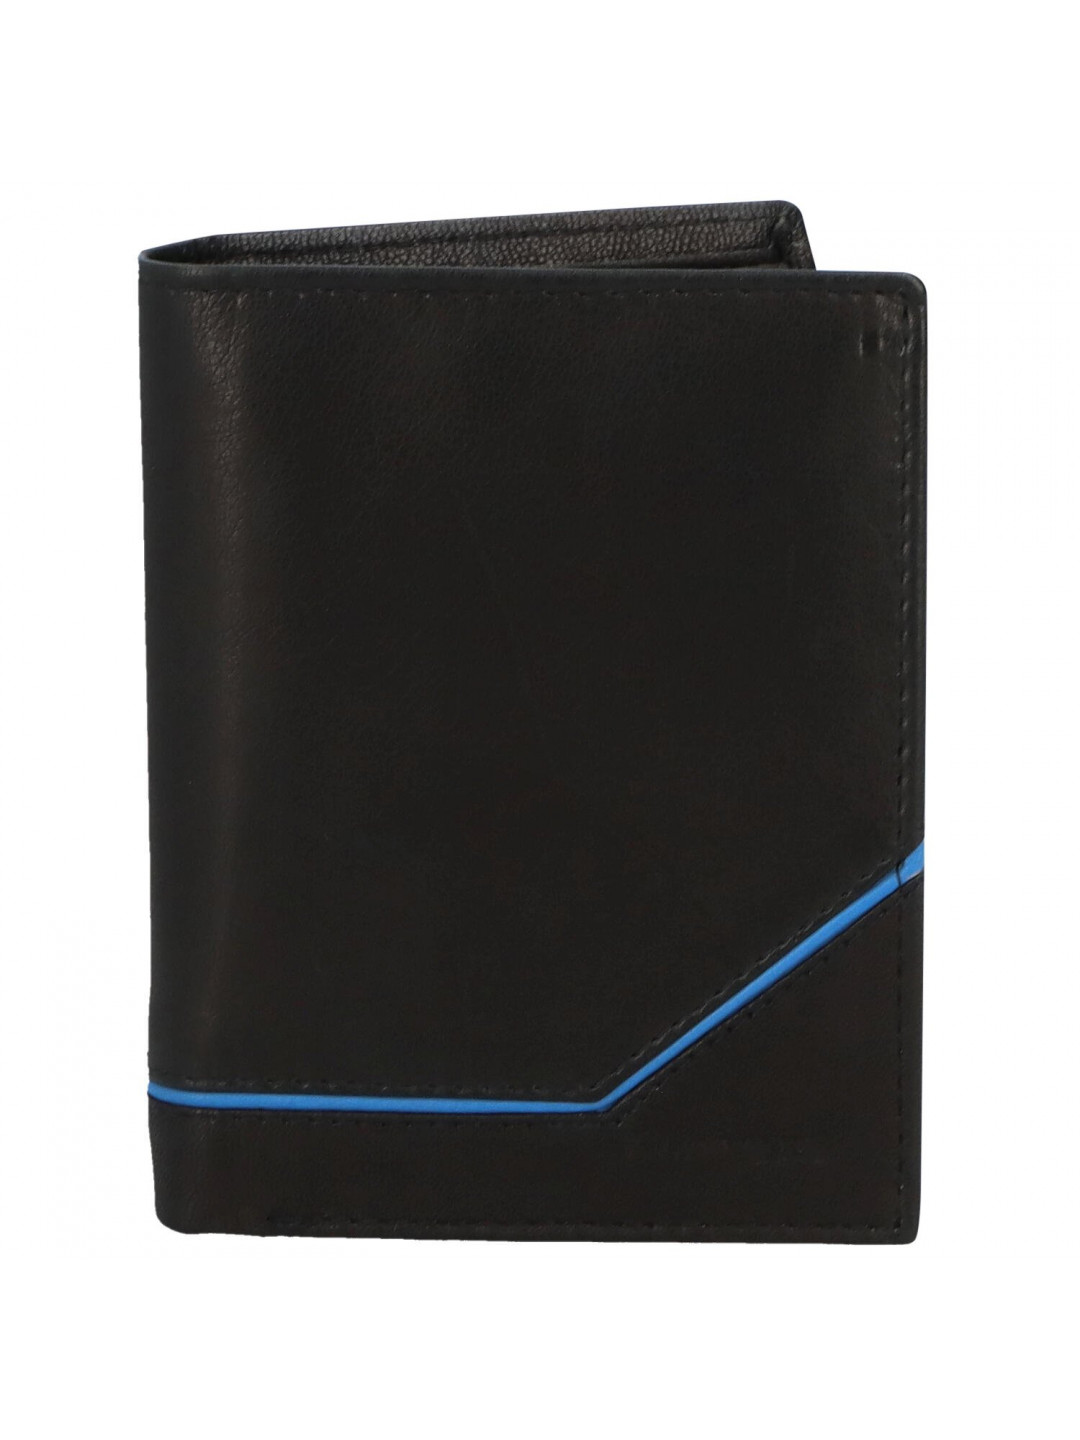 Trendová pánská kožená peněženka Gvuk černá – modrá